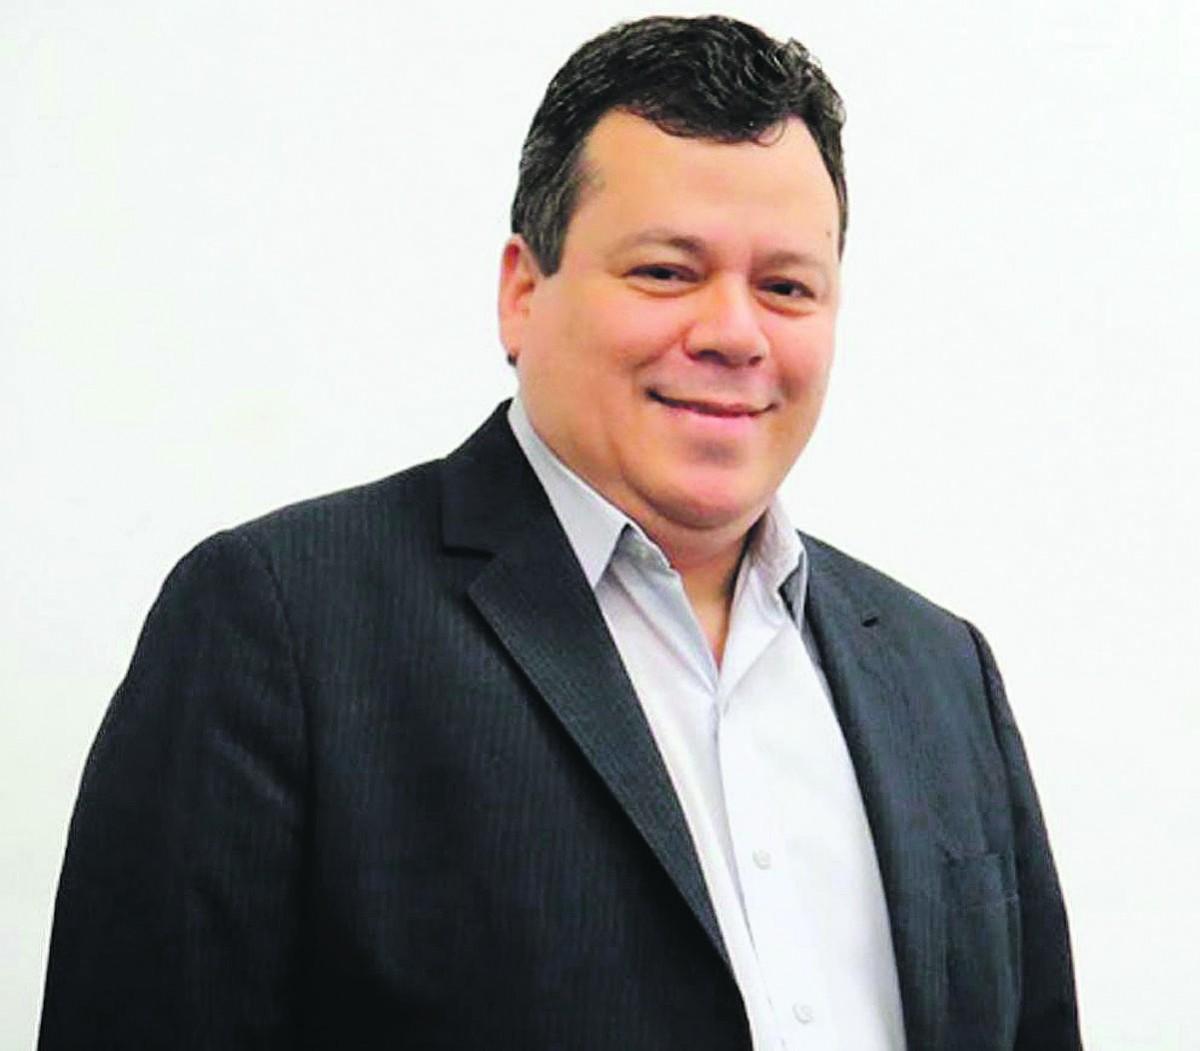 Atual vereador, ele disputou a Prefeitura pelo PSD, mas perdeu para o atual vice-prefeito, Rafael Piovezan, que disputou o cargo pelo PV (Divulgação)